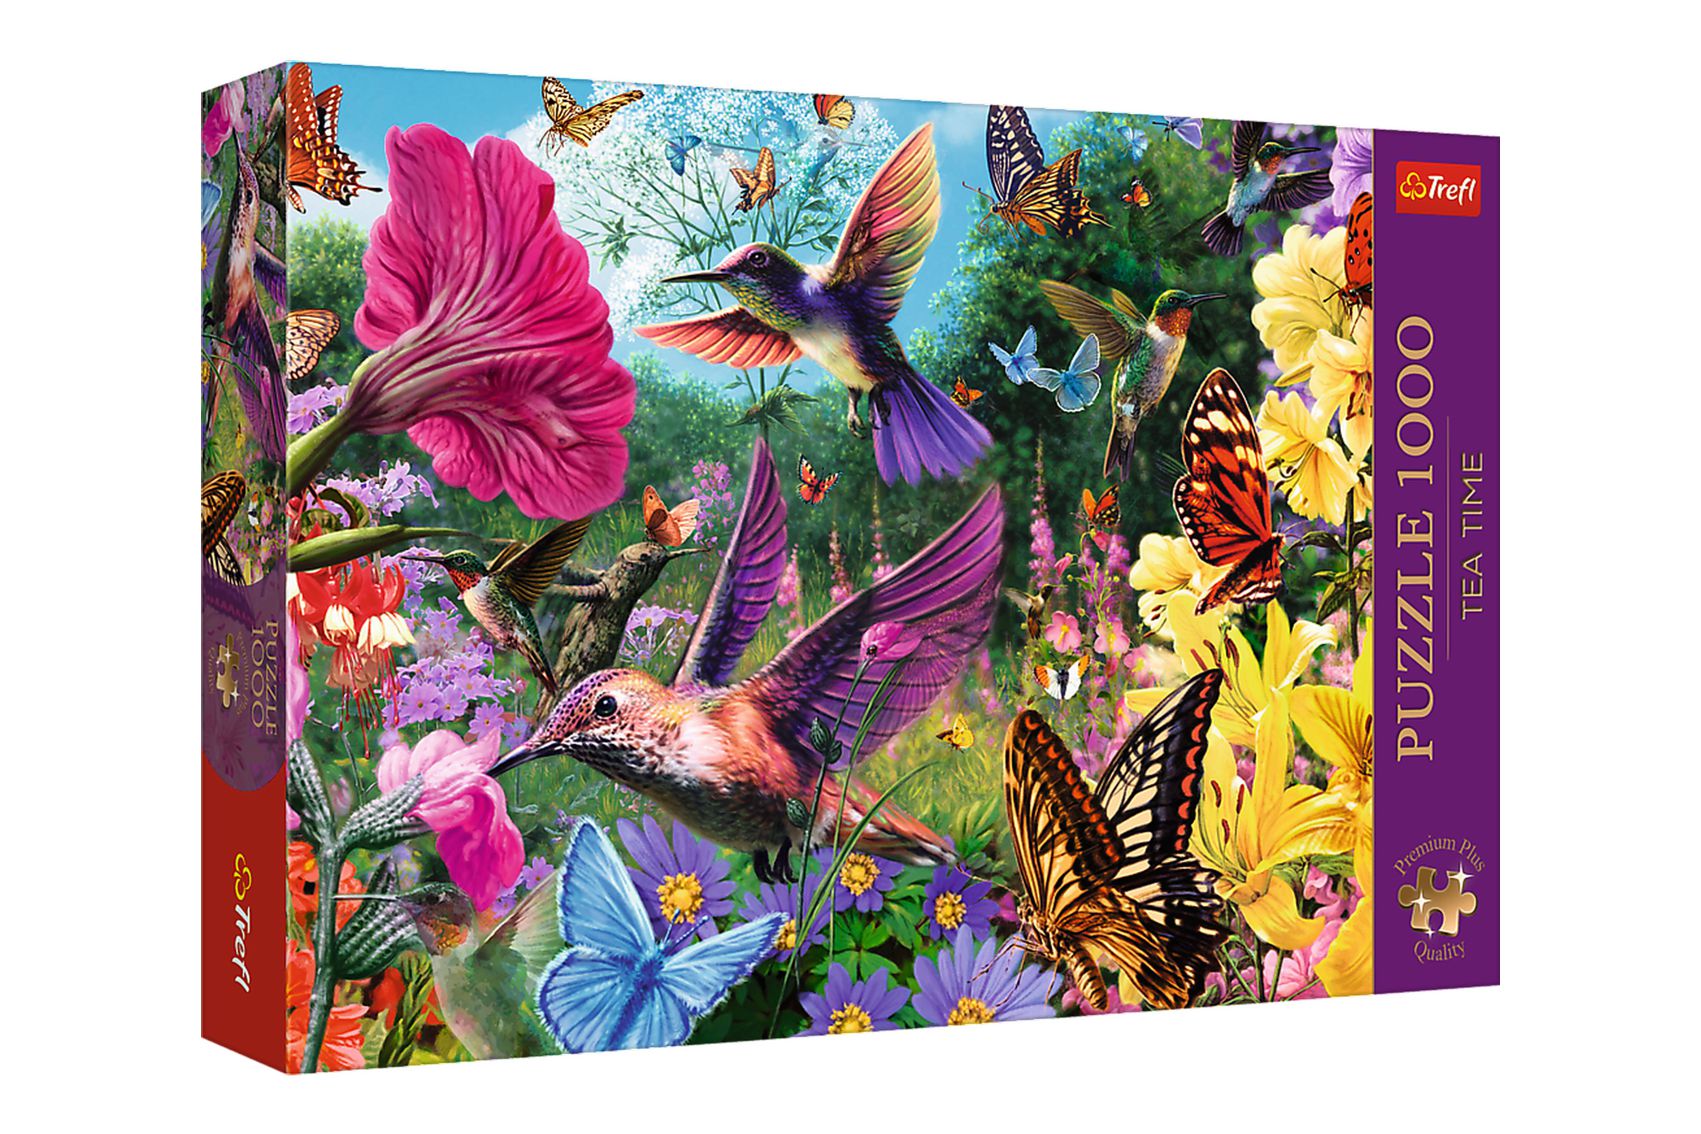 Puzzle Premium Plus - Čajový čas: Zahrada kolibříků 1000 dílků 68,3x48cm v krabici 40x27x6cm